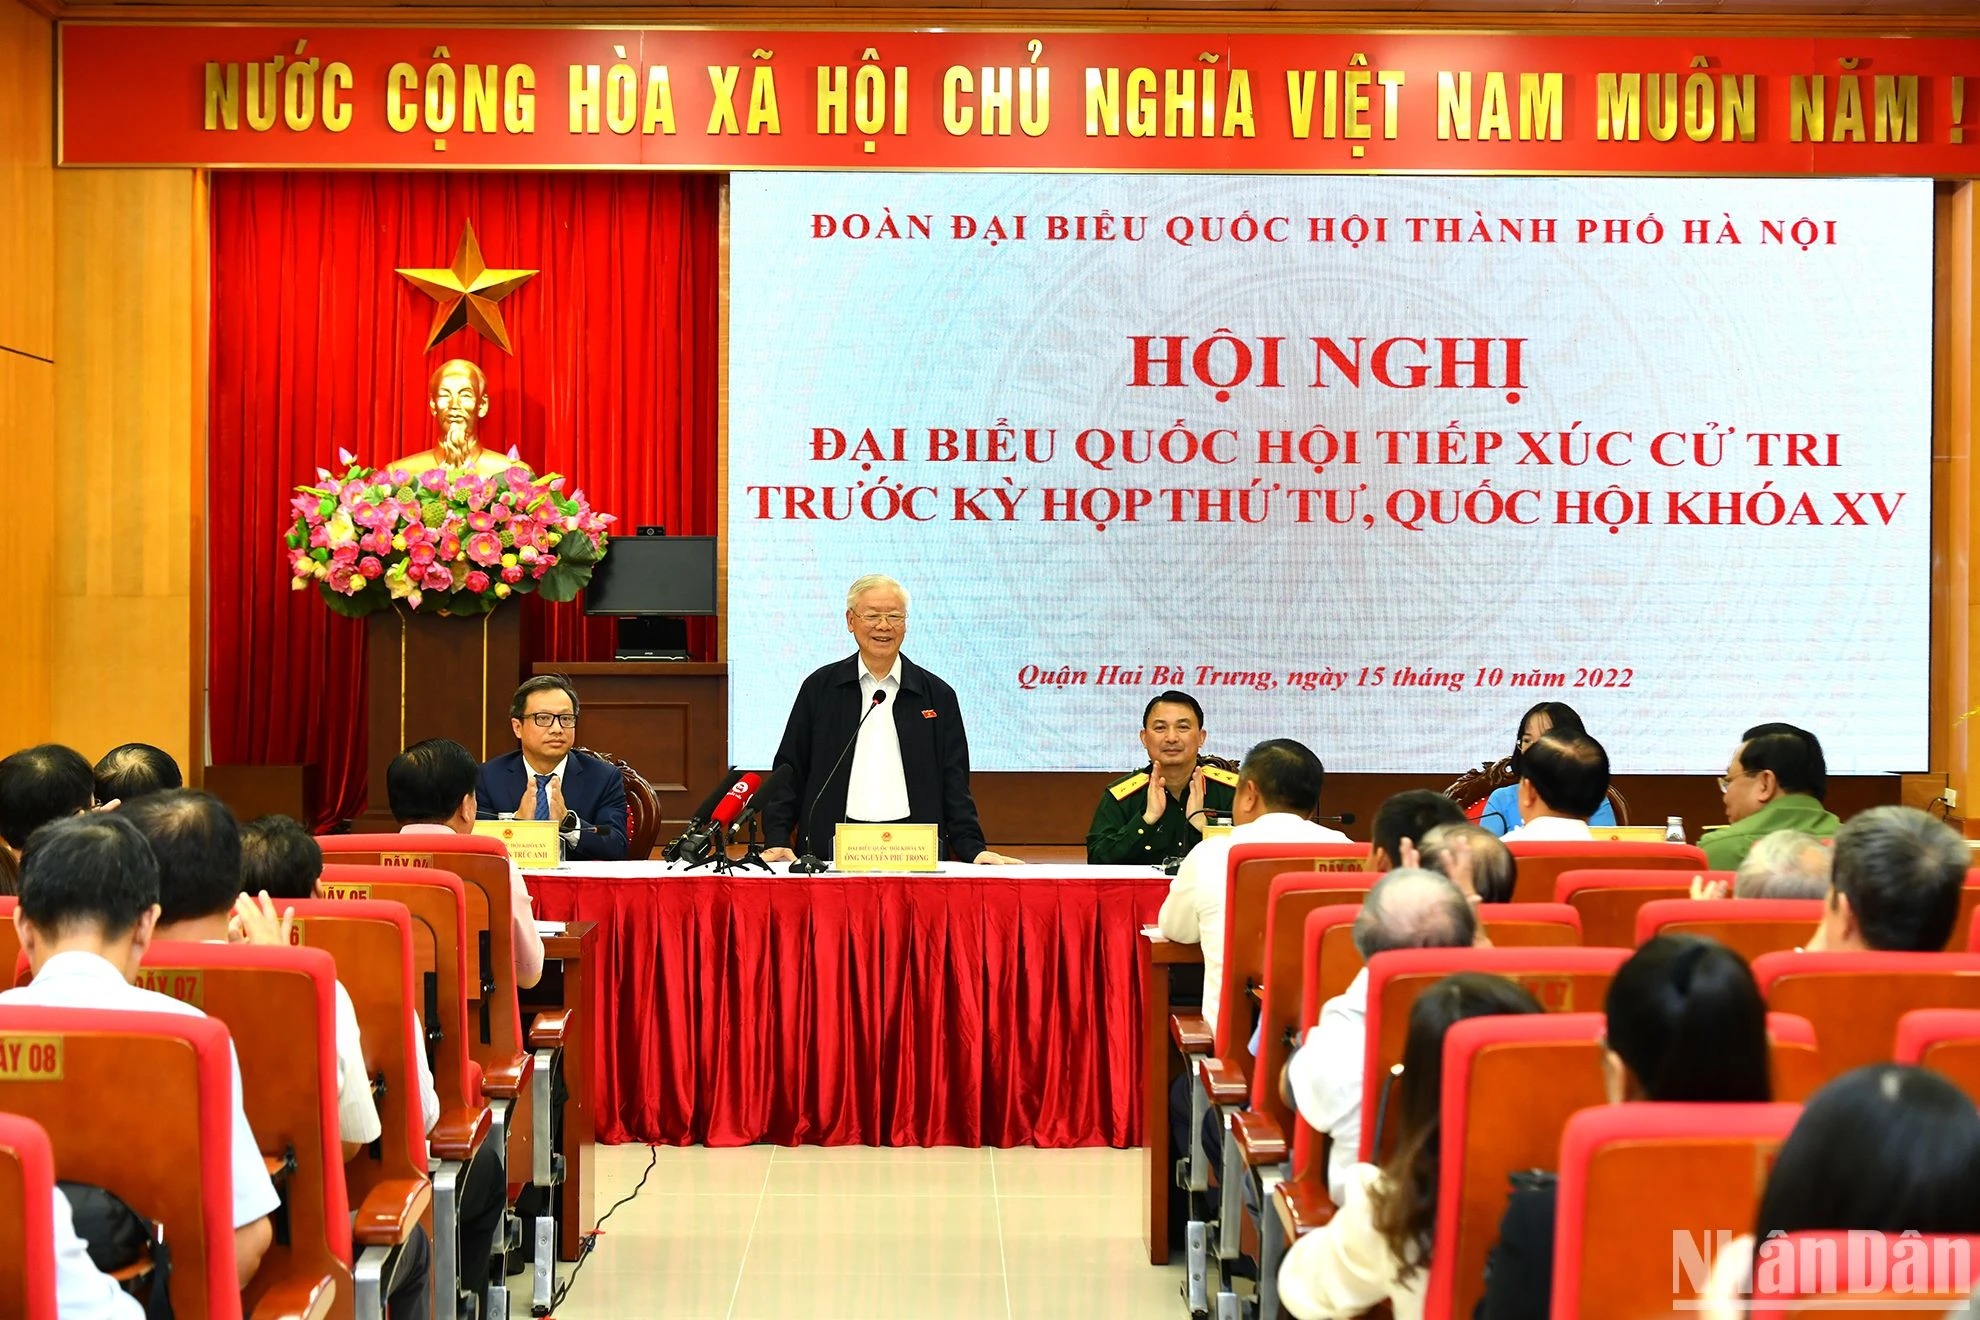 Tổng Bí thư Nguyễn Phú Trọng phát biểu tại buổi tiếp xúc cử tri, ngày 15/10/2022.